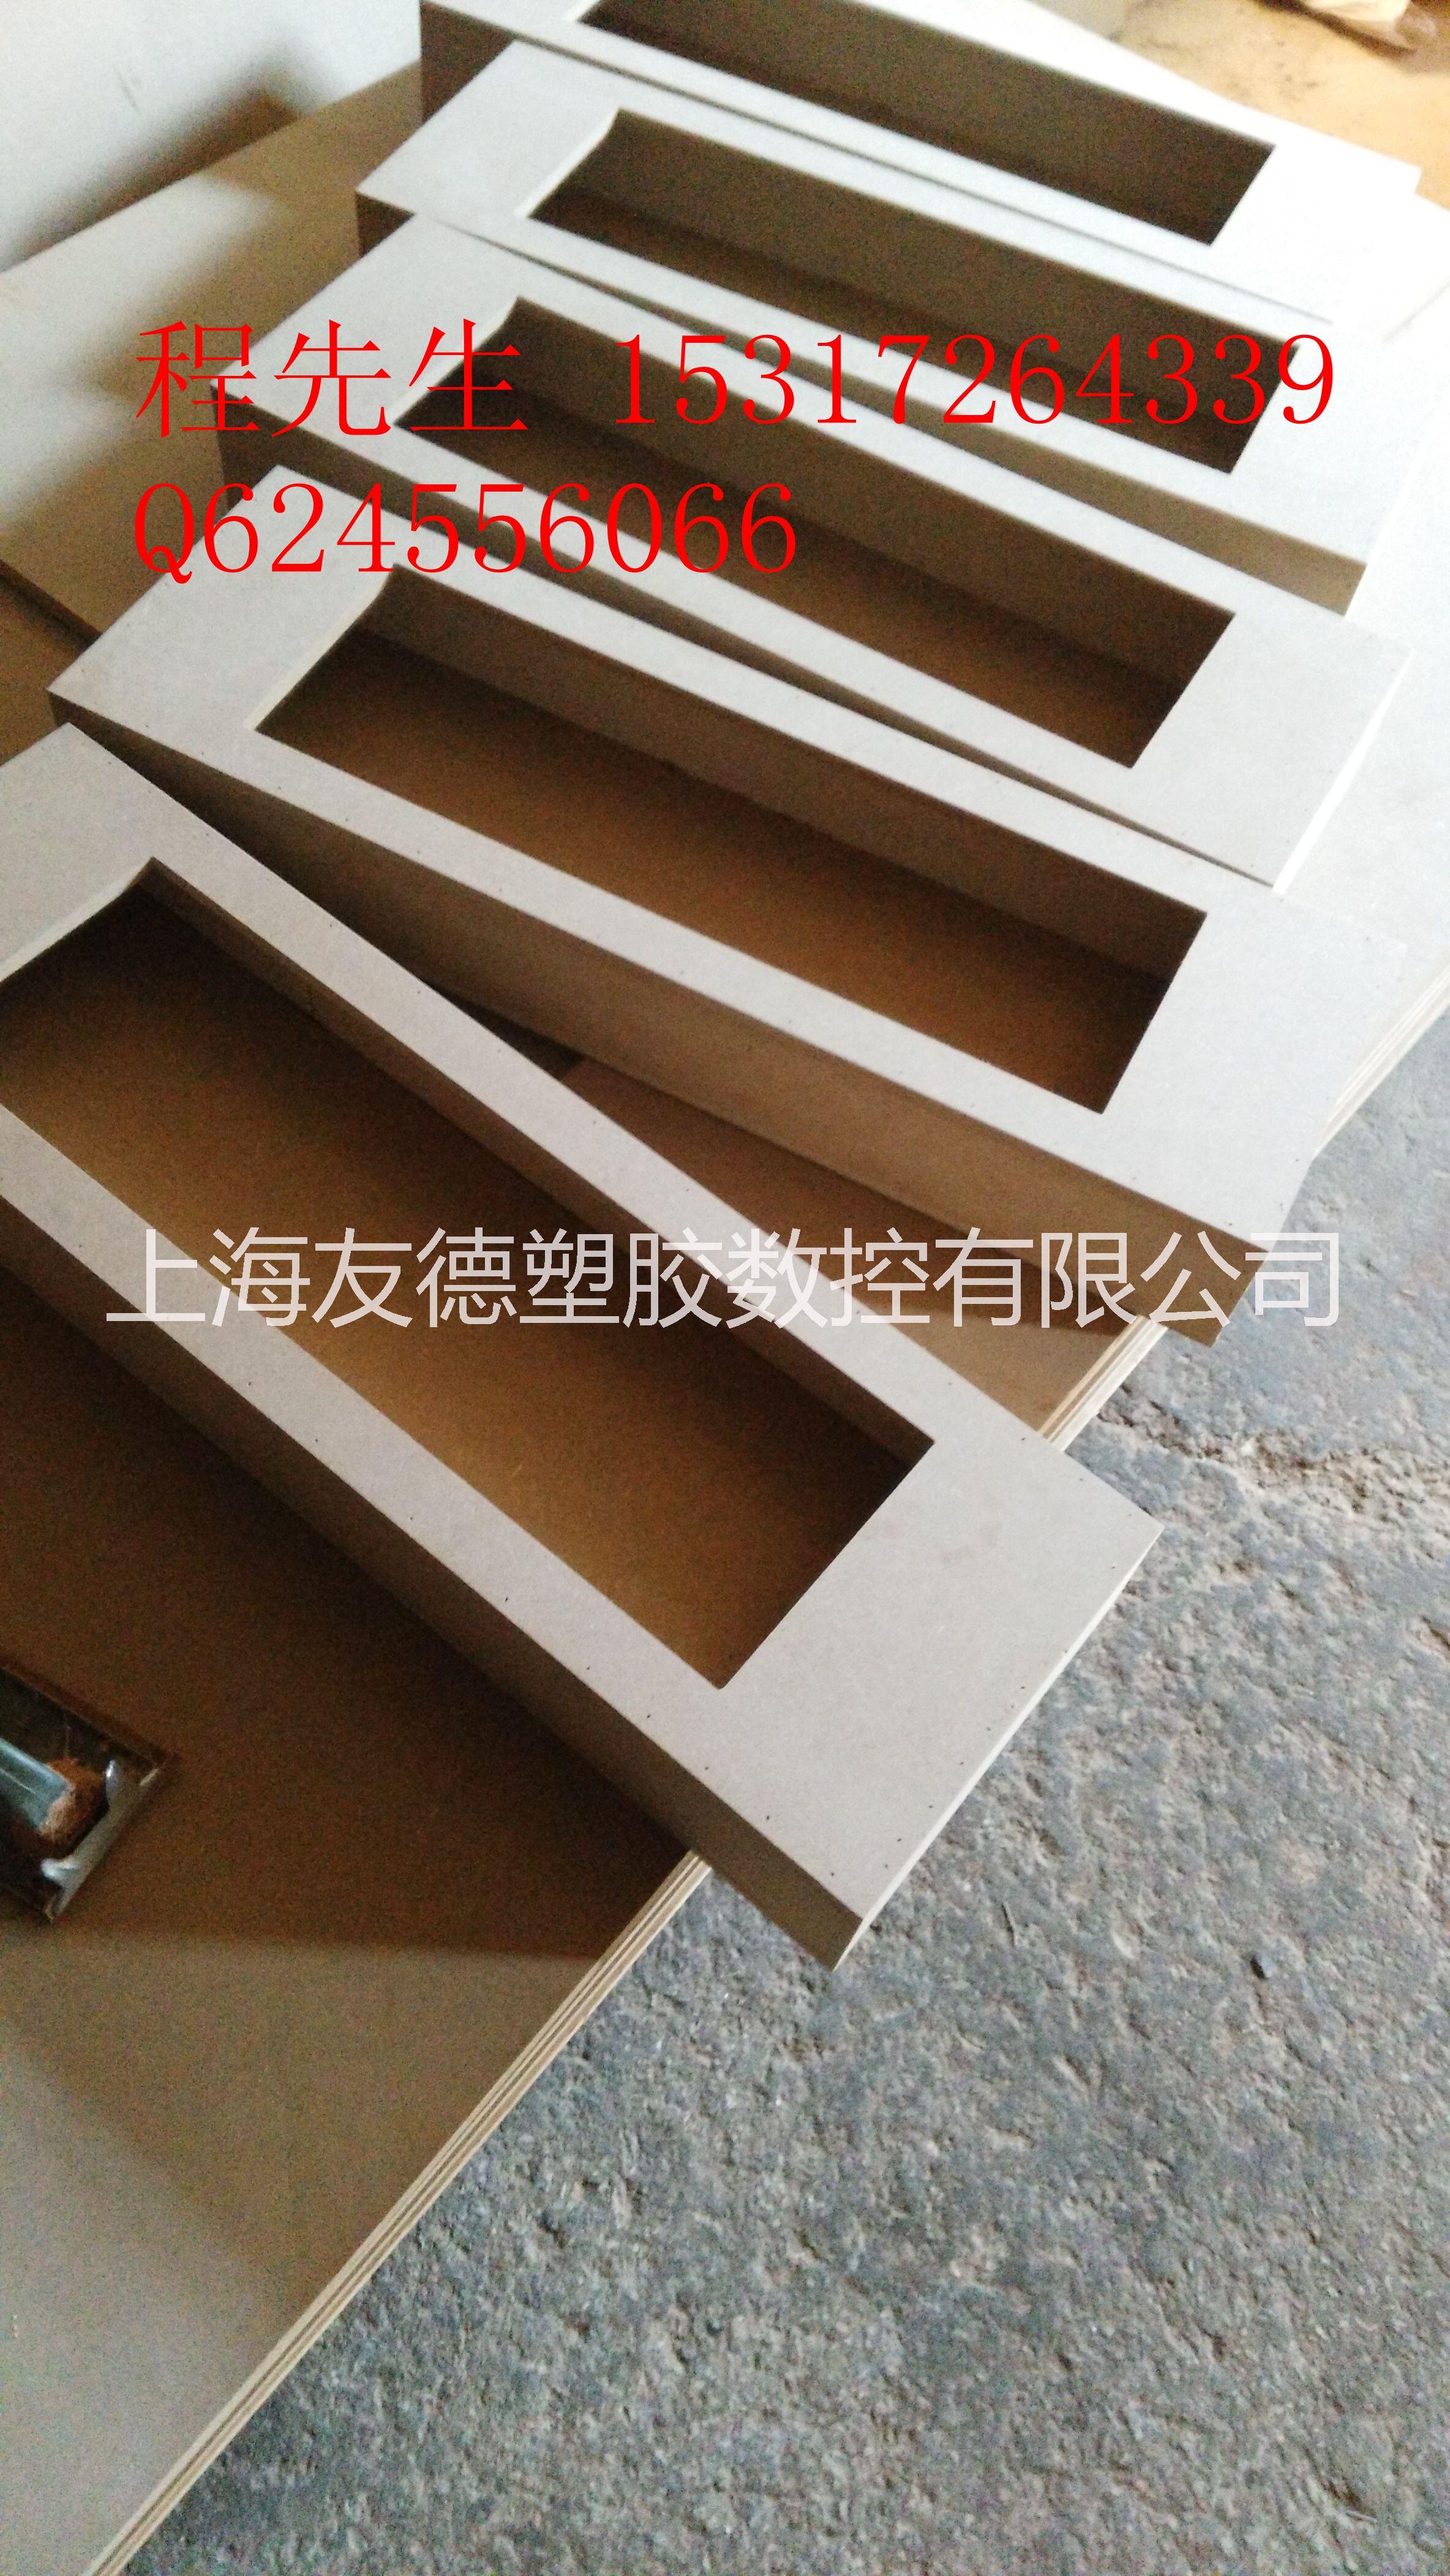 上海黄浦密度板雕刻厂家加工厂家加工定制多少钱